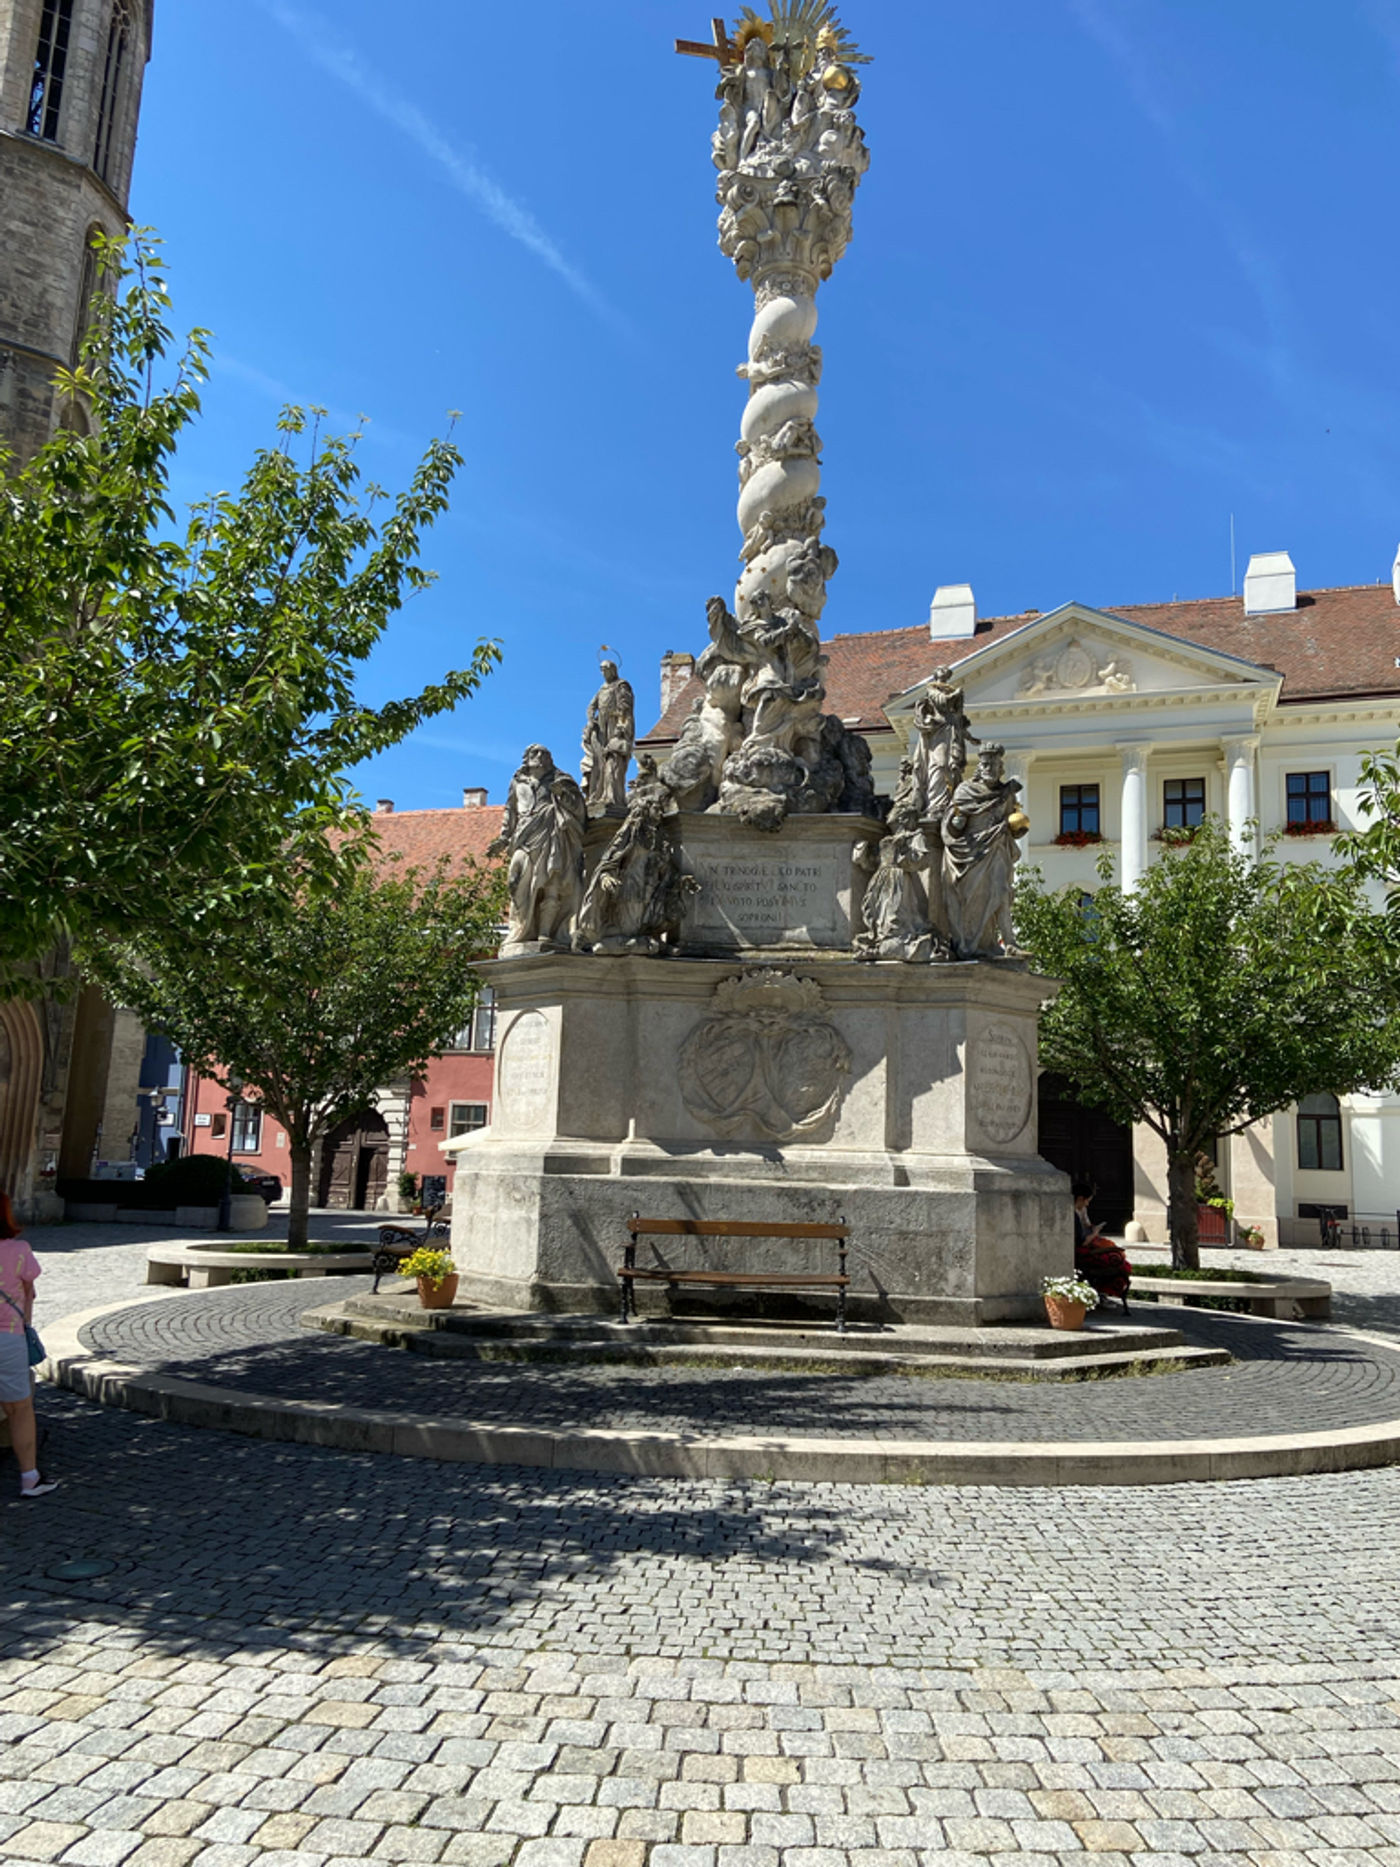 Sopron Hungary